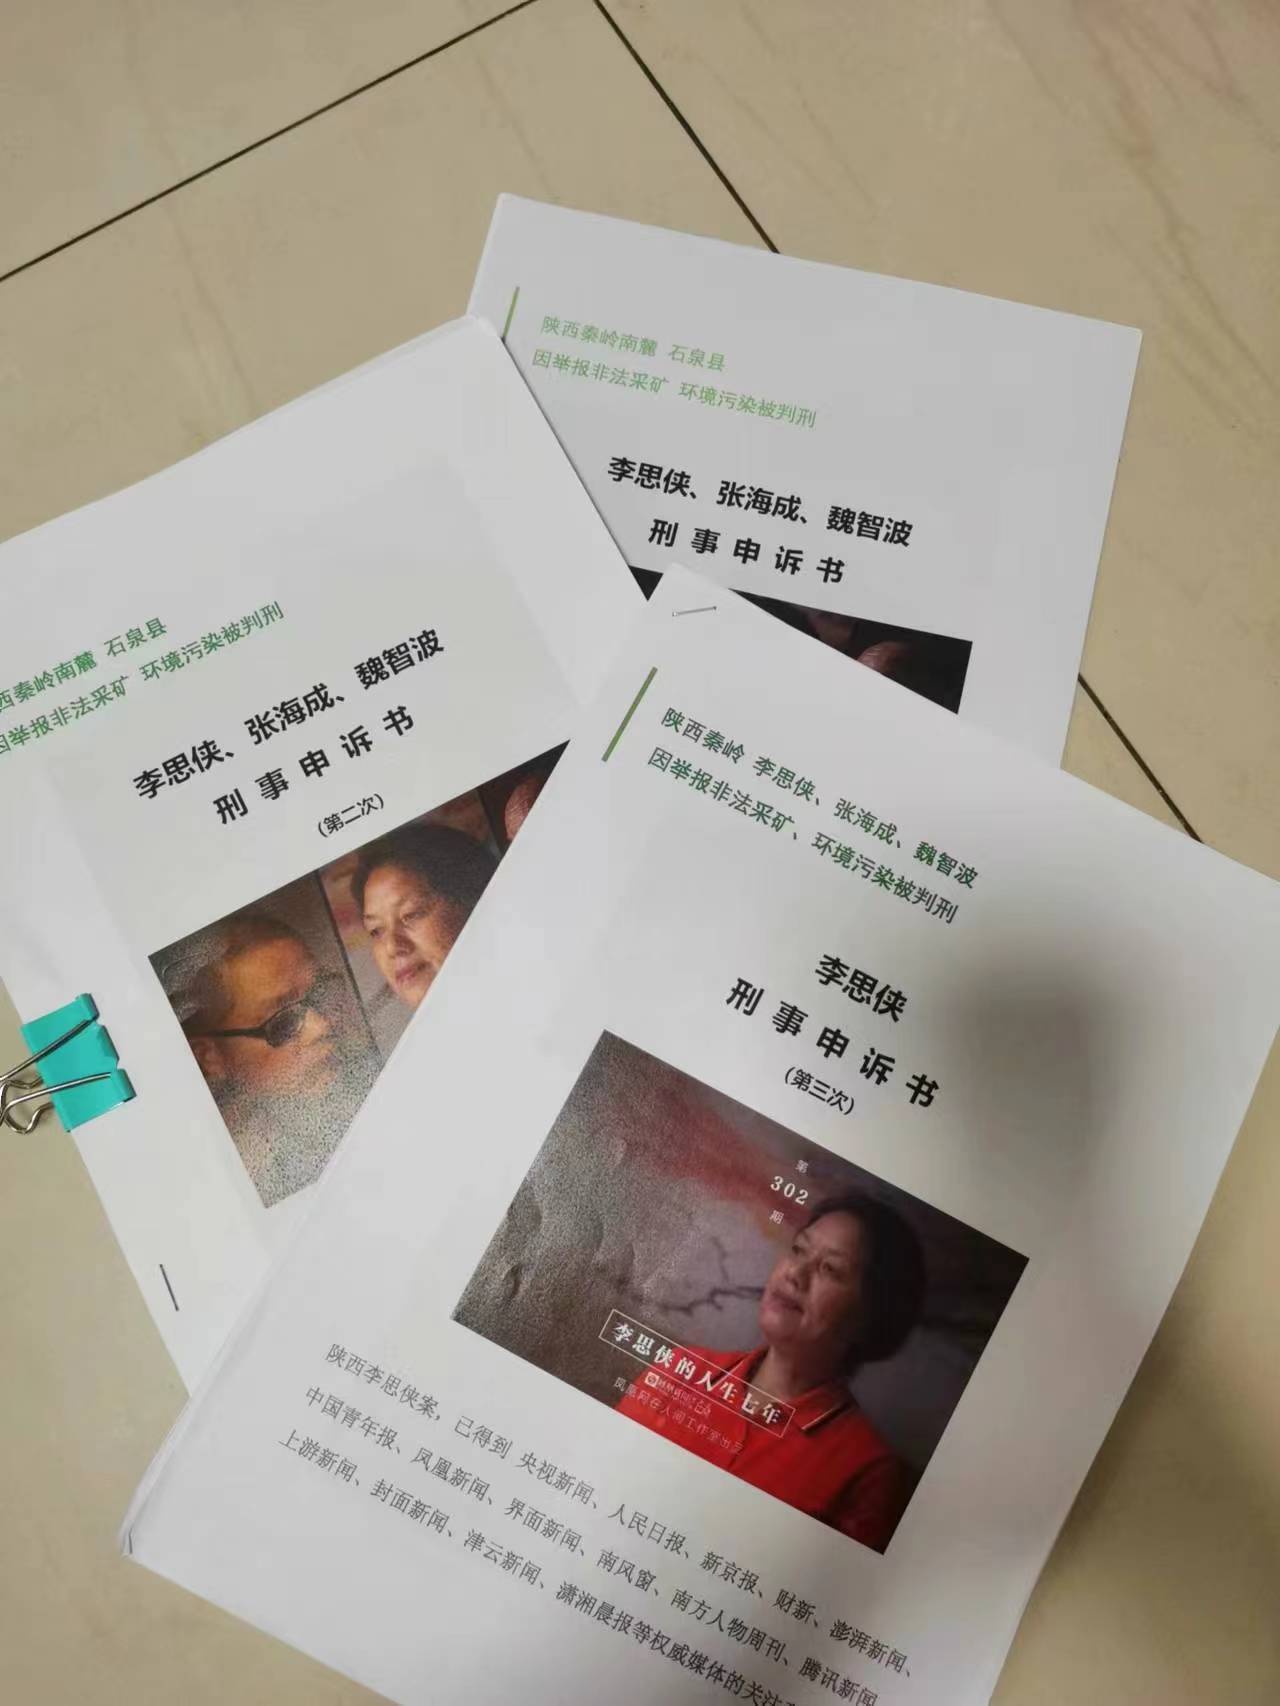 陕西女子举报污染获刑后改判无罪，申请242万元国赔获受理：要追责、要清白